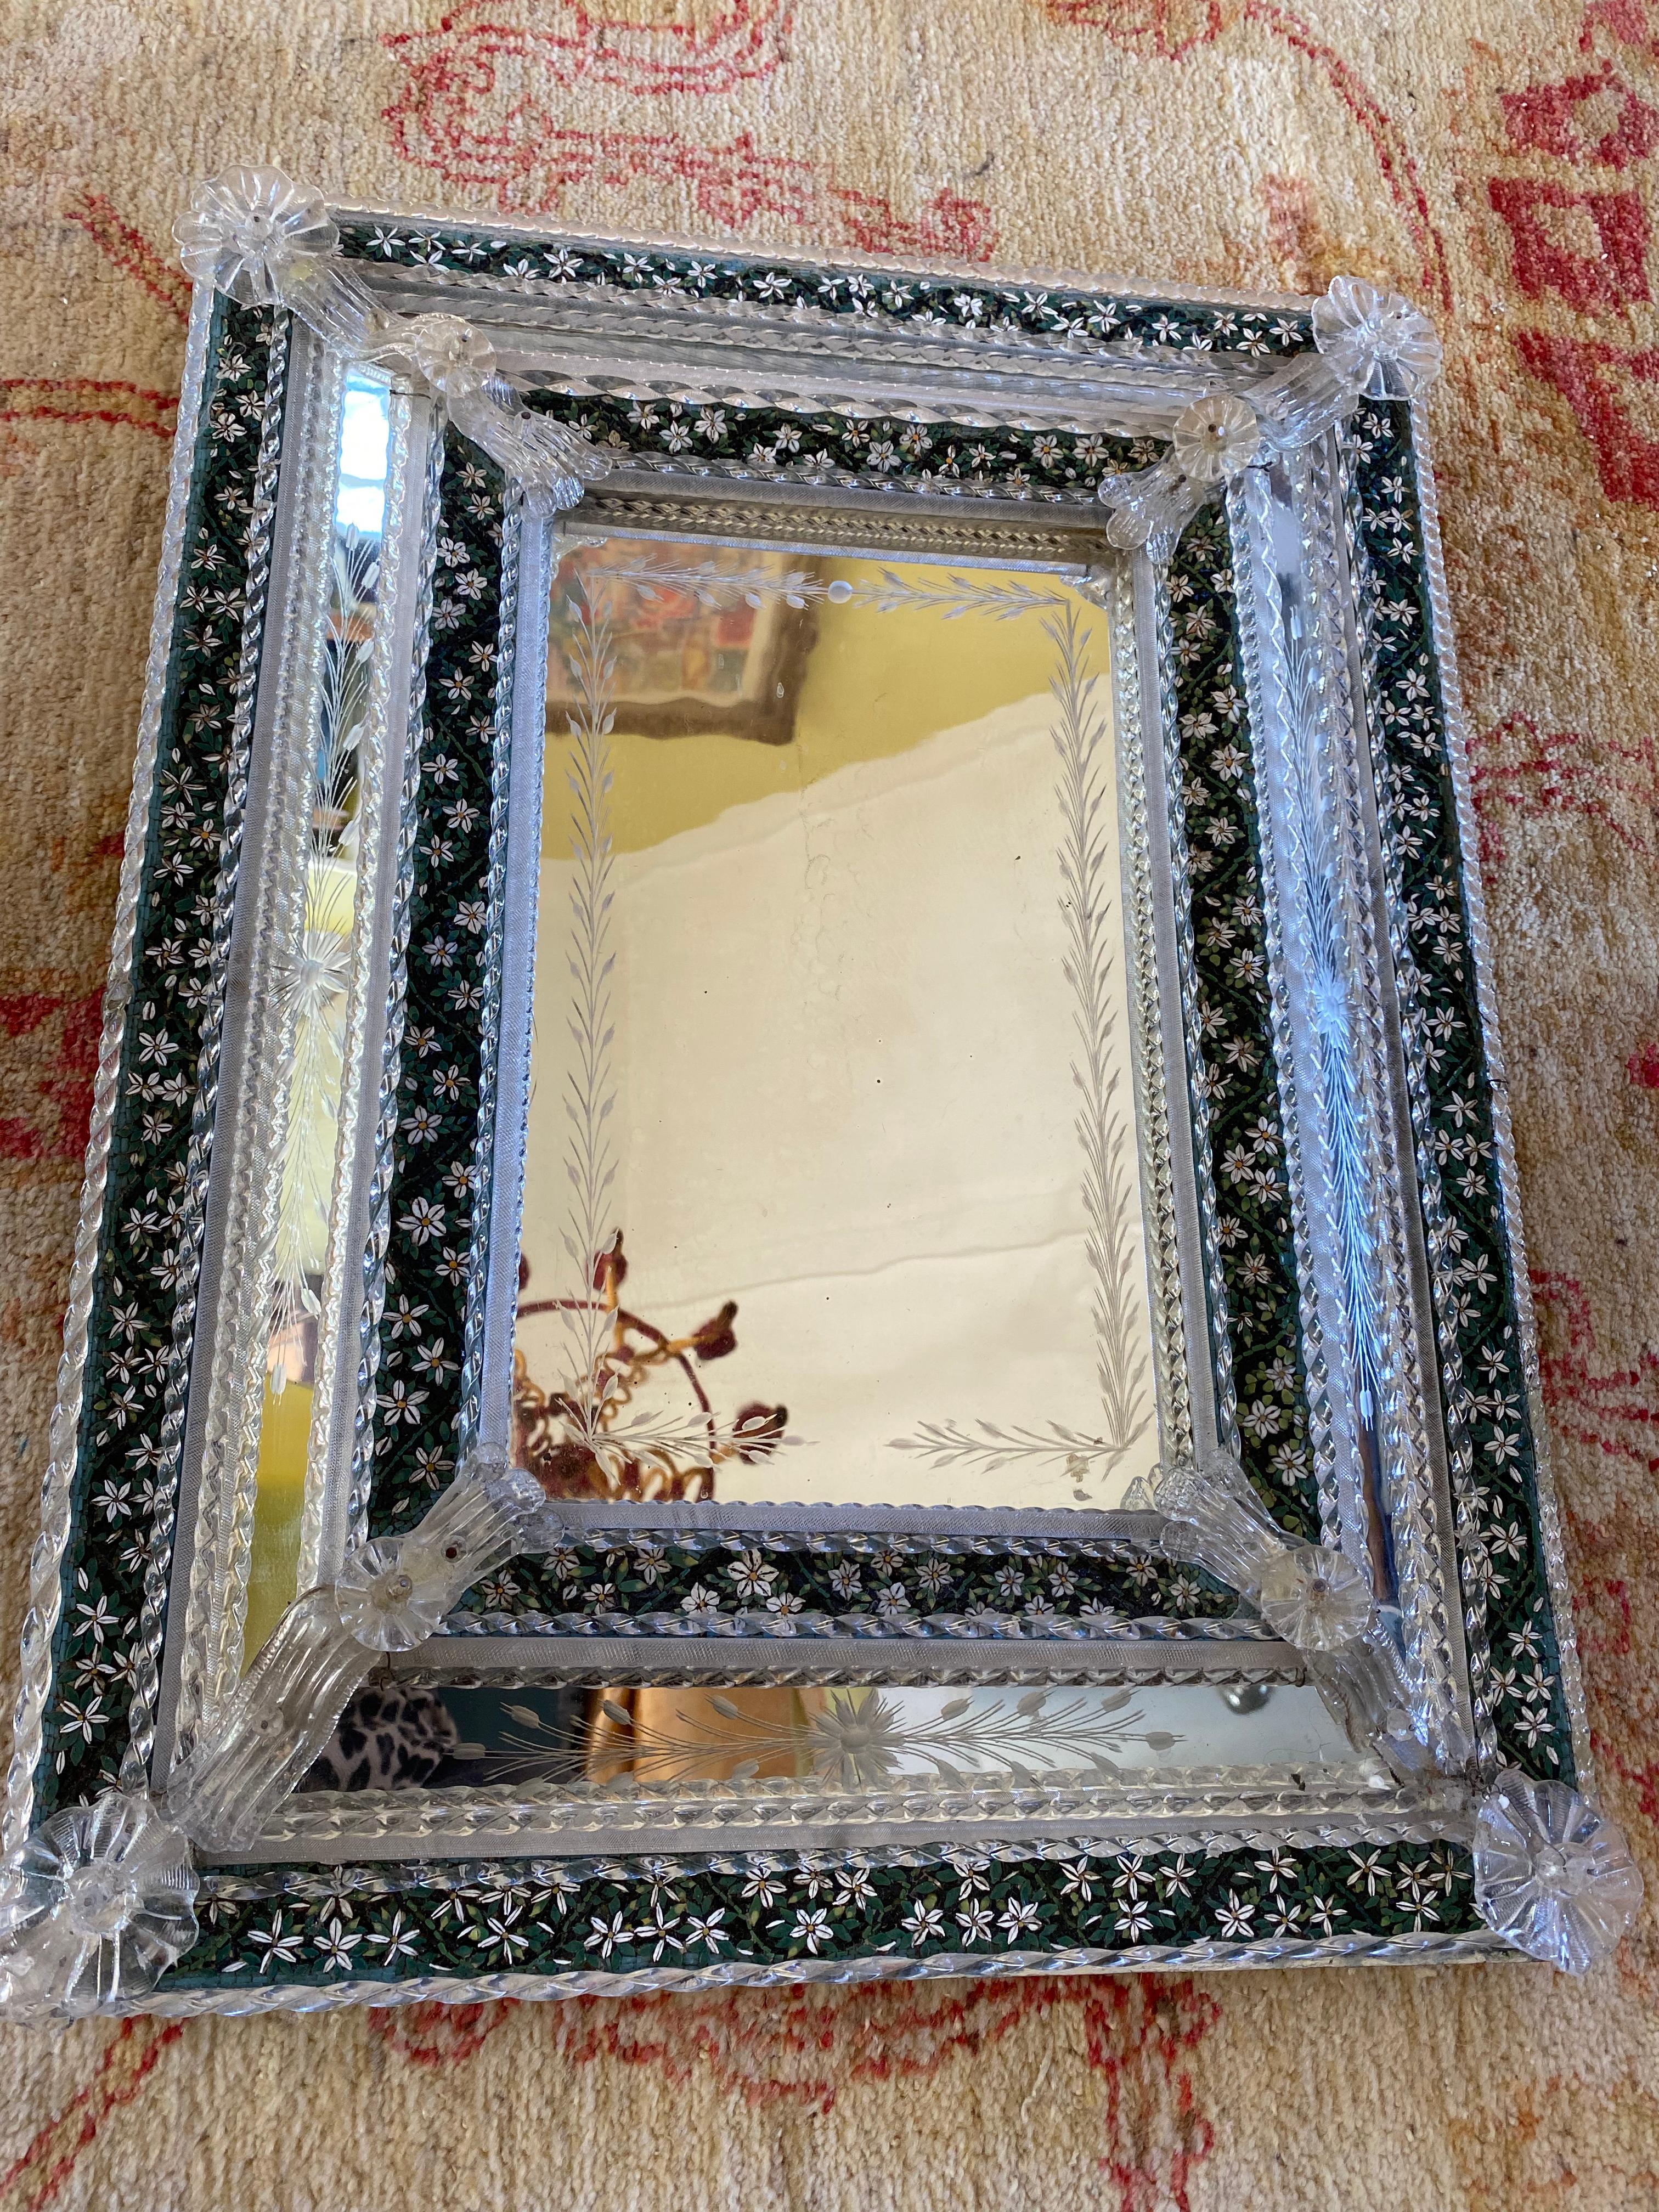 Seltener venezianischer geätzter Spiegel mit Mikromosaik aus Pate de Verre, Details aus geblasenem Glas und gedrehten Baguettes. Er ist in einem Holzrahmen gefasst. Das Mikro-Mosaik dieses Stücks ist wahrscheinlich ein venezianisches Werk aus der